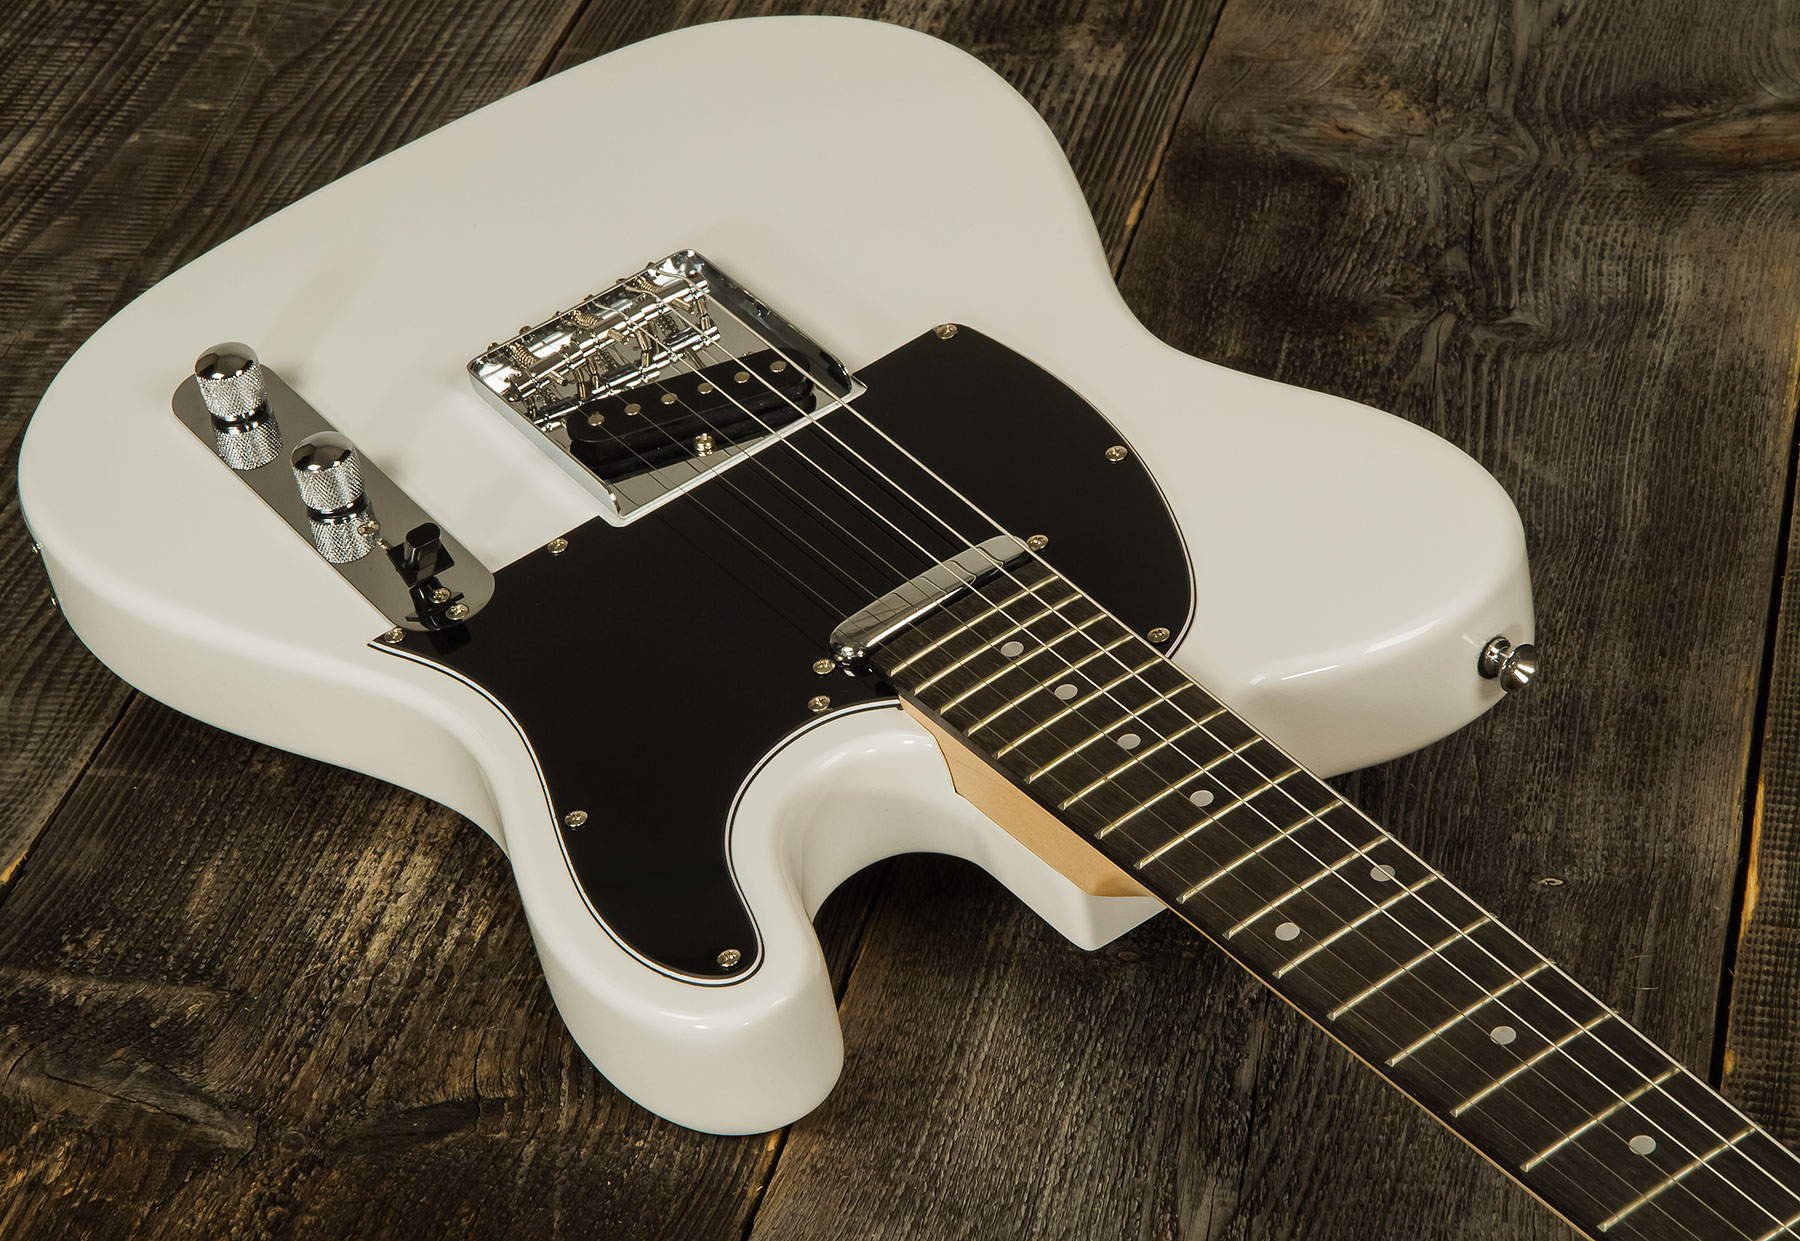 Eastone Tl70 2s Ht Pur - Olympic White - Televorm elektrische gitaar - Variation 1